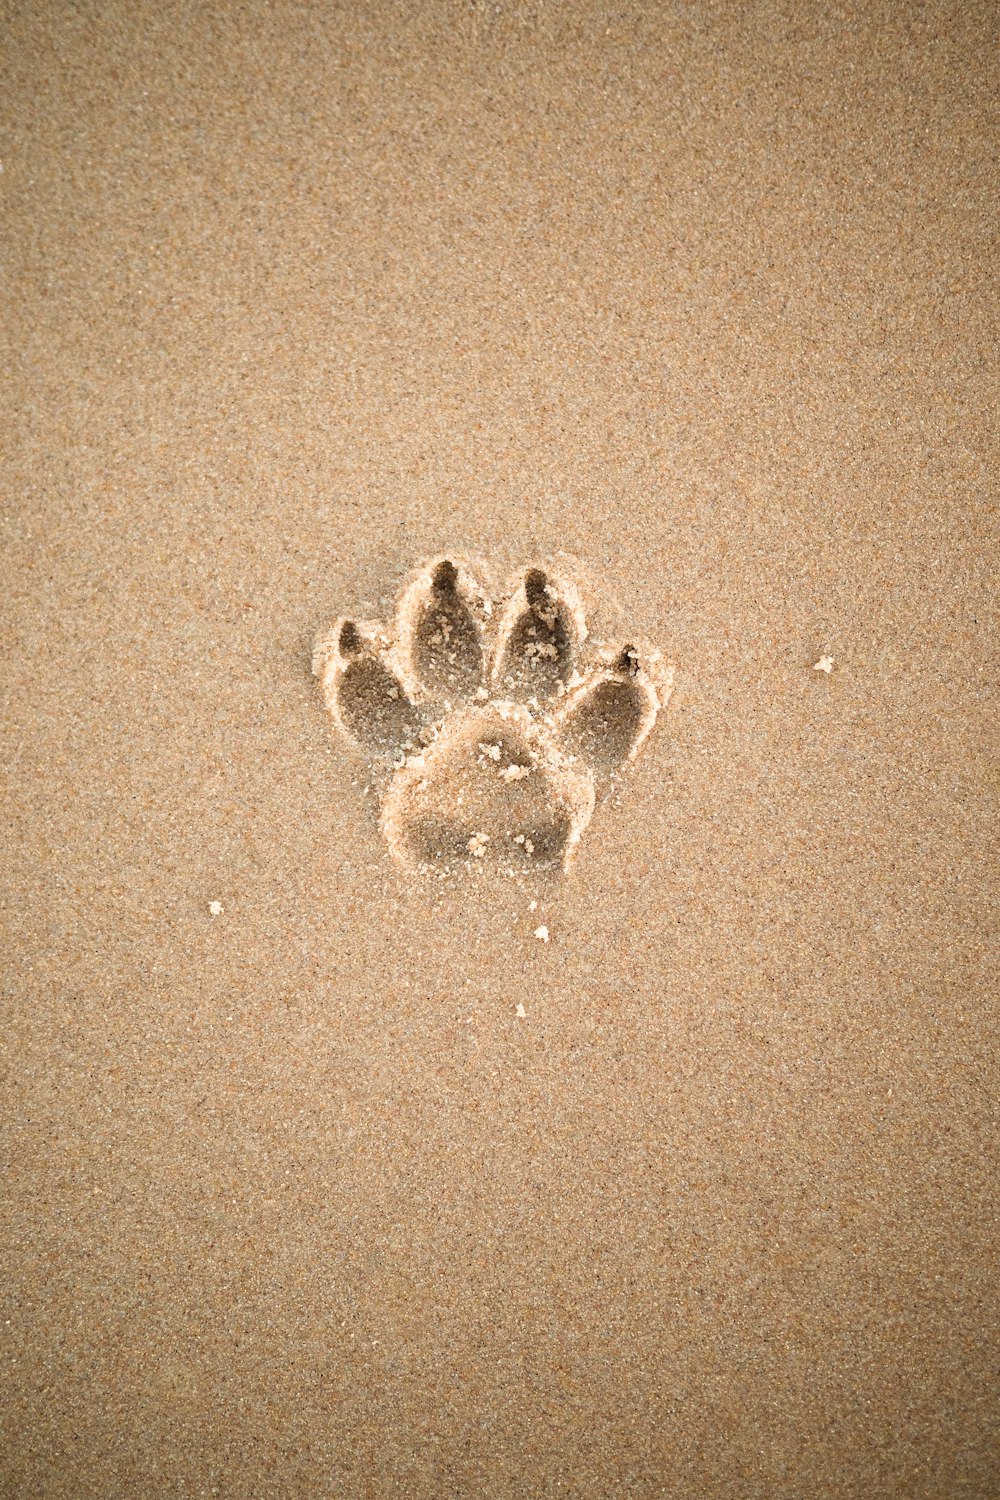 하트 모양의 모래가 있는 갈색 모래